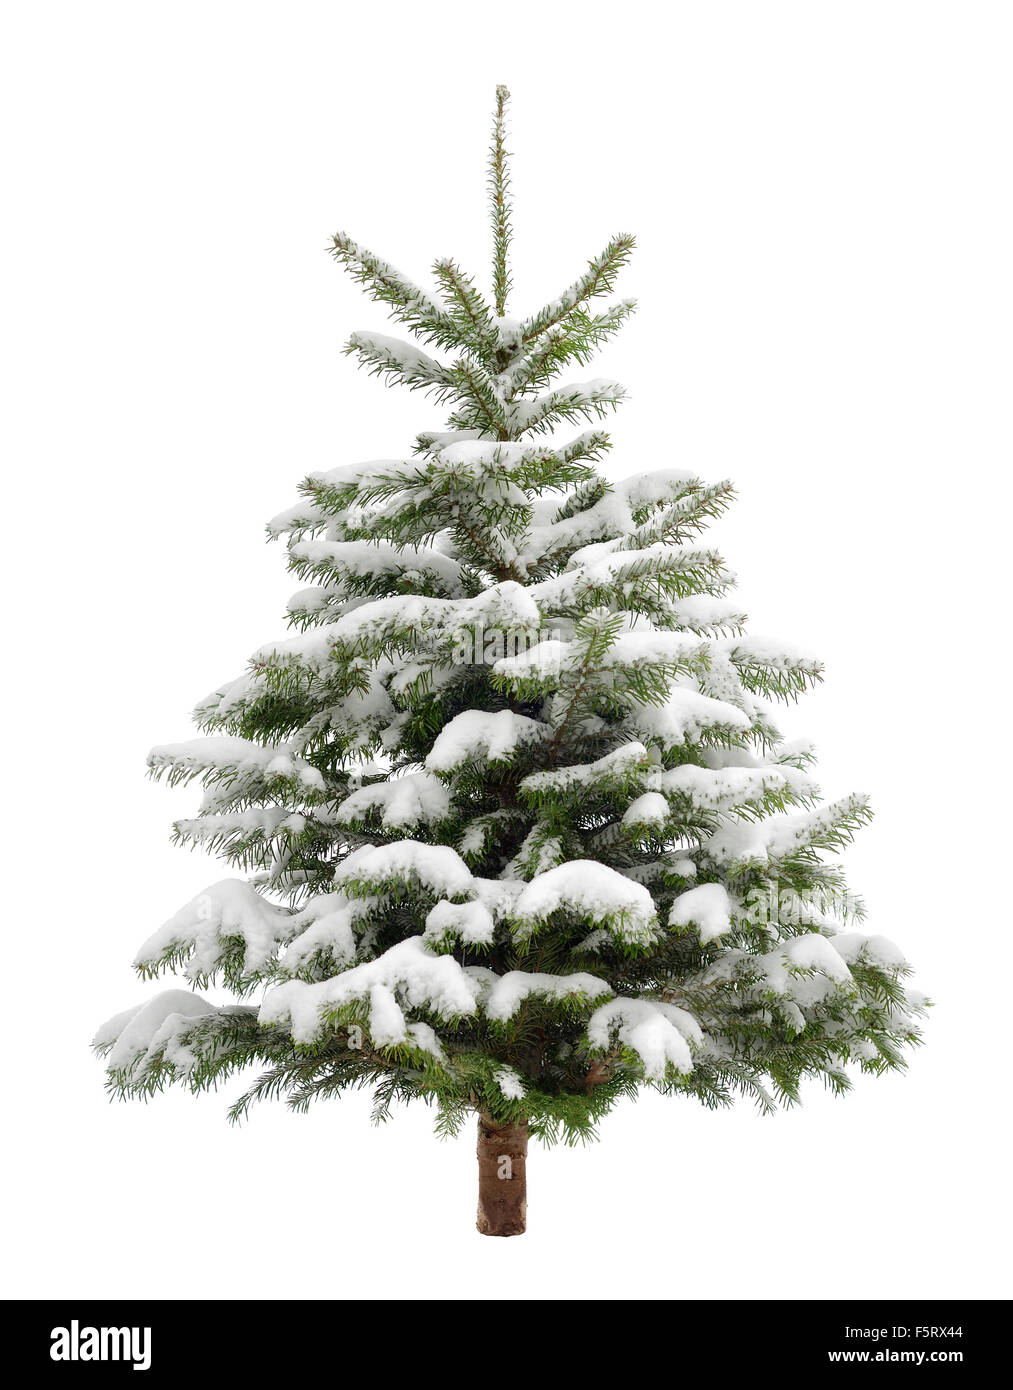 Perfetto piccolo albero di Natale nella neve fresca, isolato puro su sfondo bianco Foto Stock